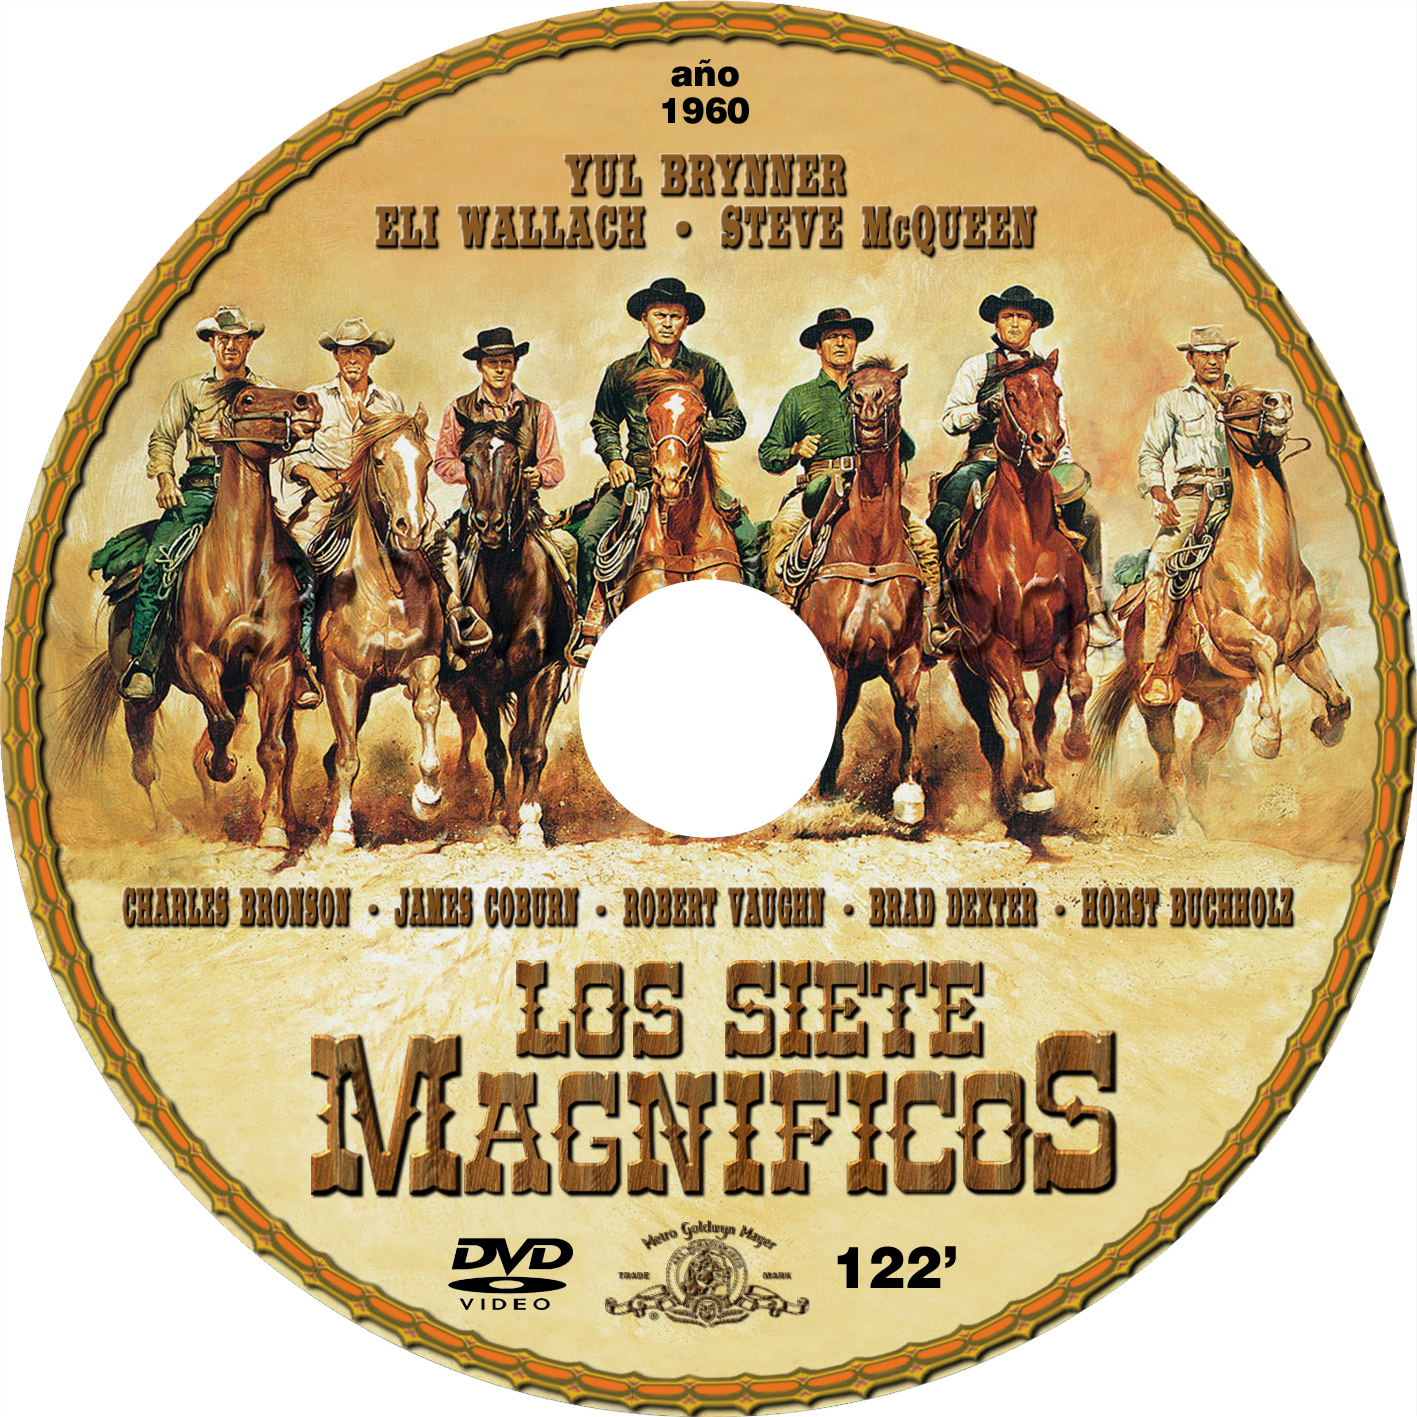 Caratulas de películas DVD para cajas CD: Los siete magníficos - [1960]